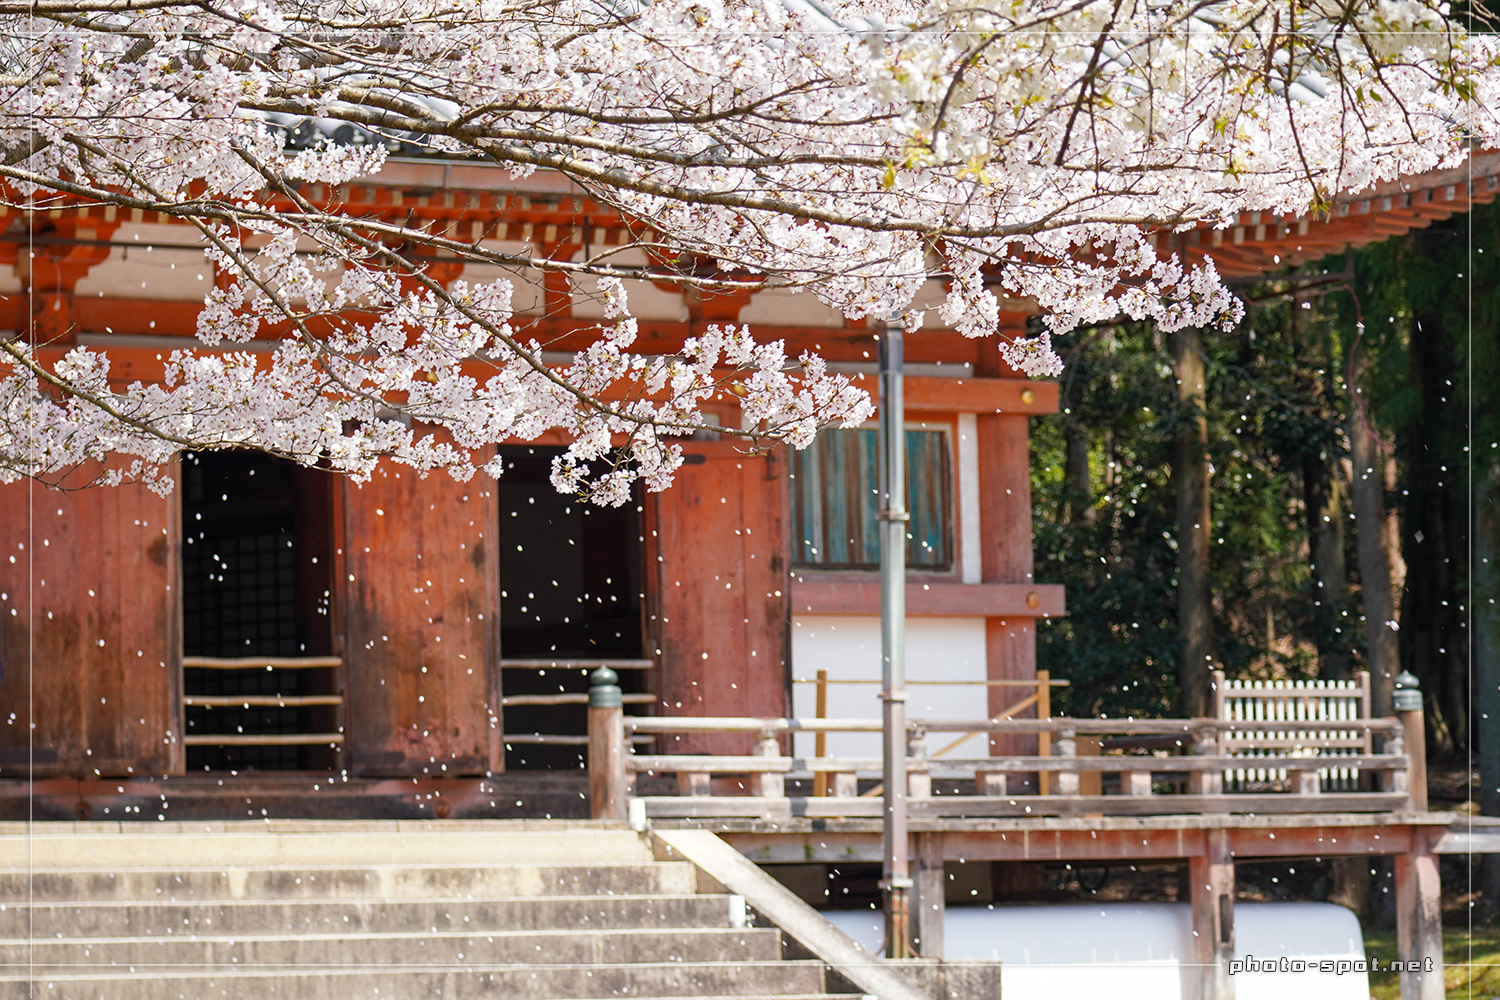 醍醐寺 伽藍 国宝の金堂と桜吹雪